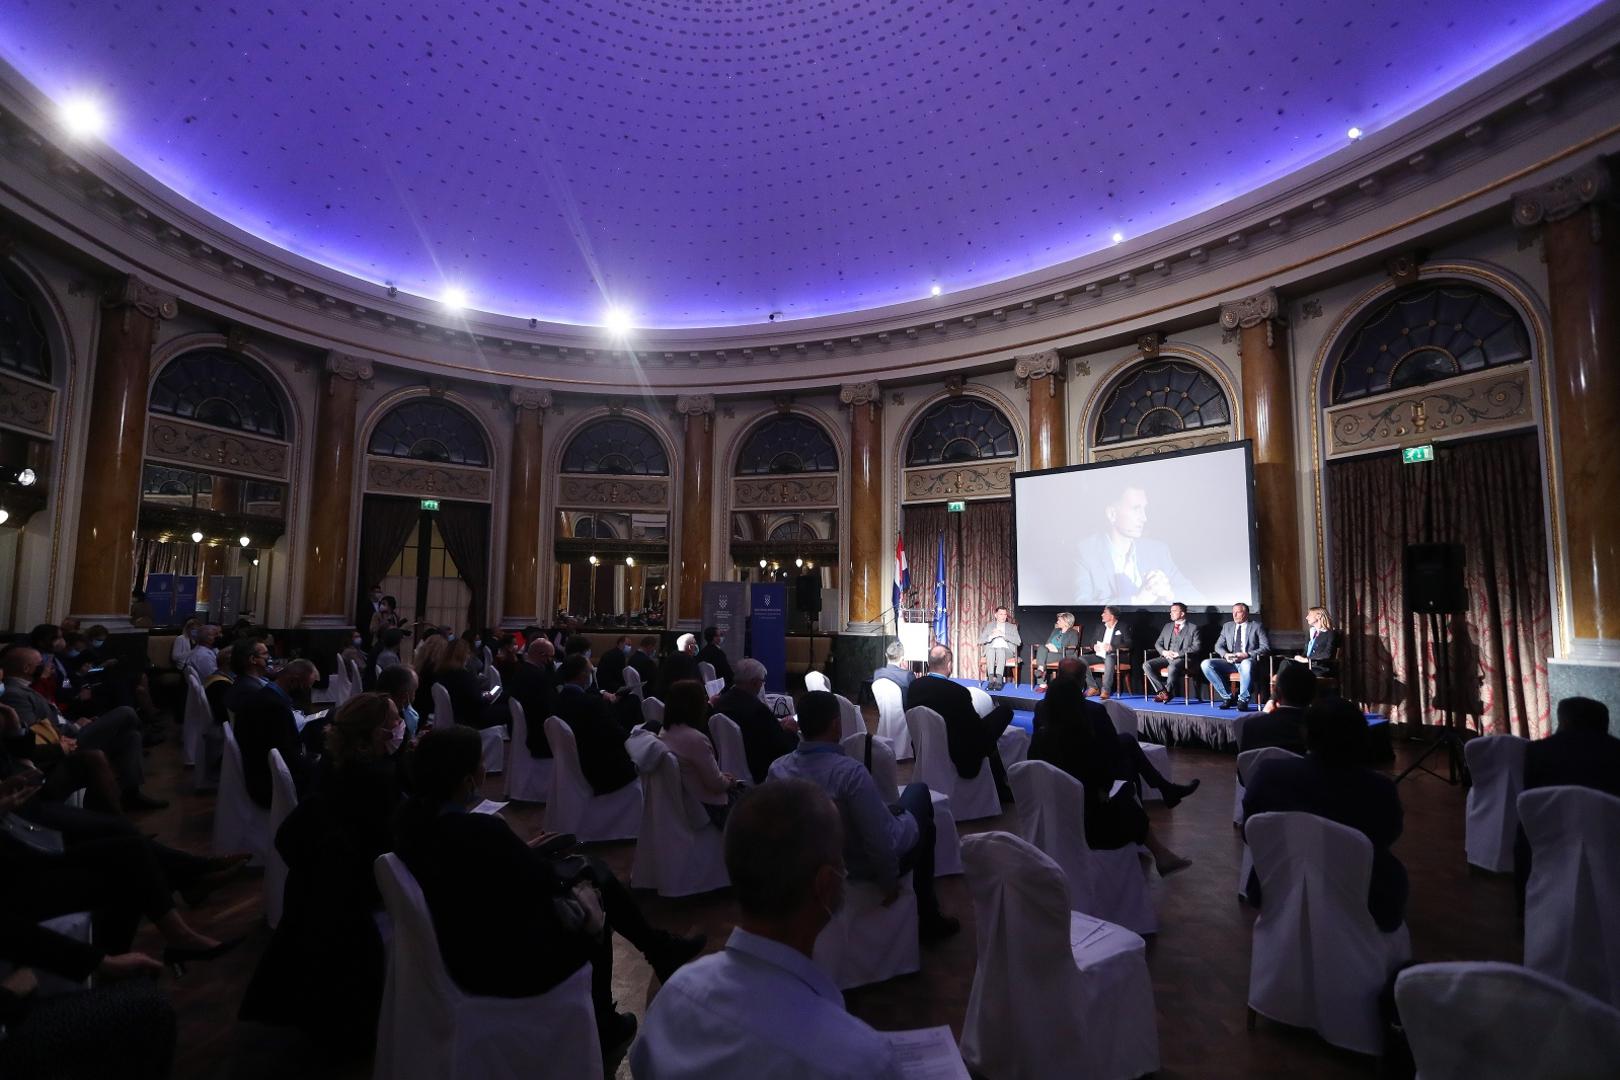 28.09.2020., Zagreb - U hotelu Esplanade odrzana konferencija Nacionalni inovacijski sustav - rjesenje za globalne izazove. 
Photo: Luka Stanzl/PIXSELL